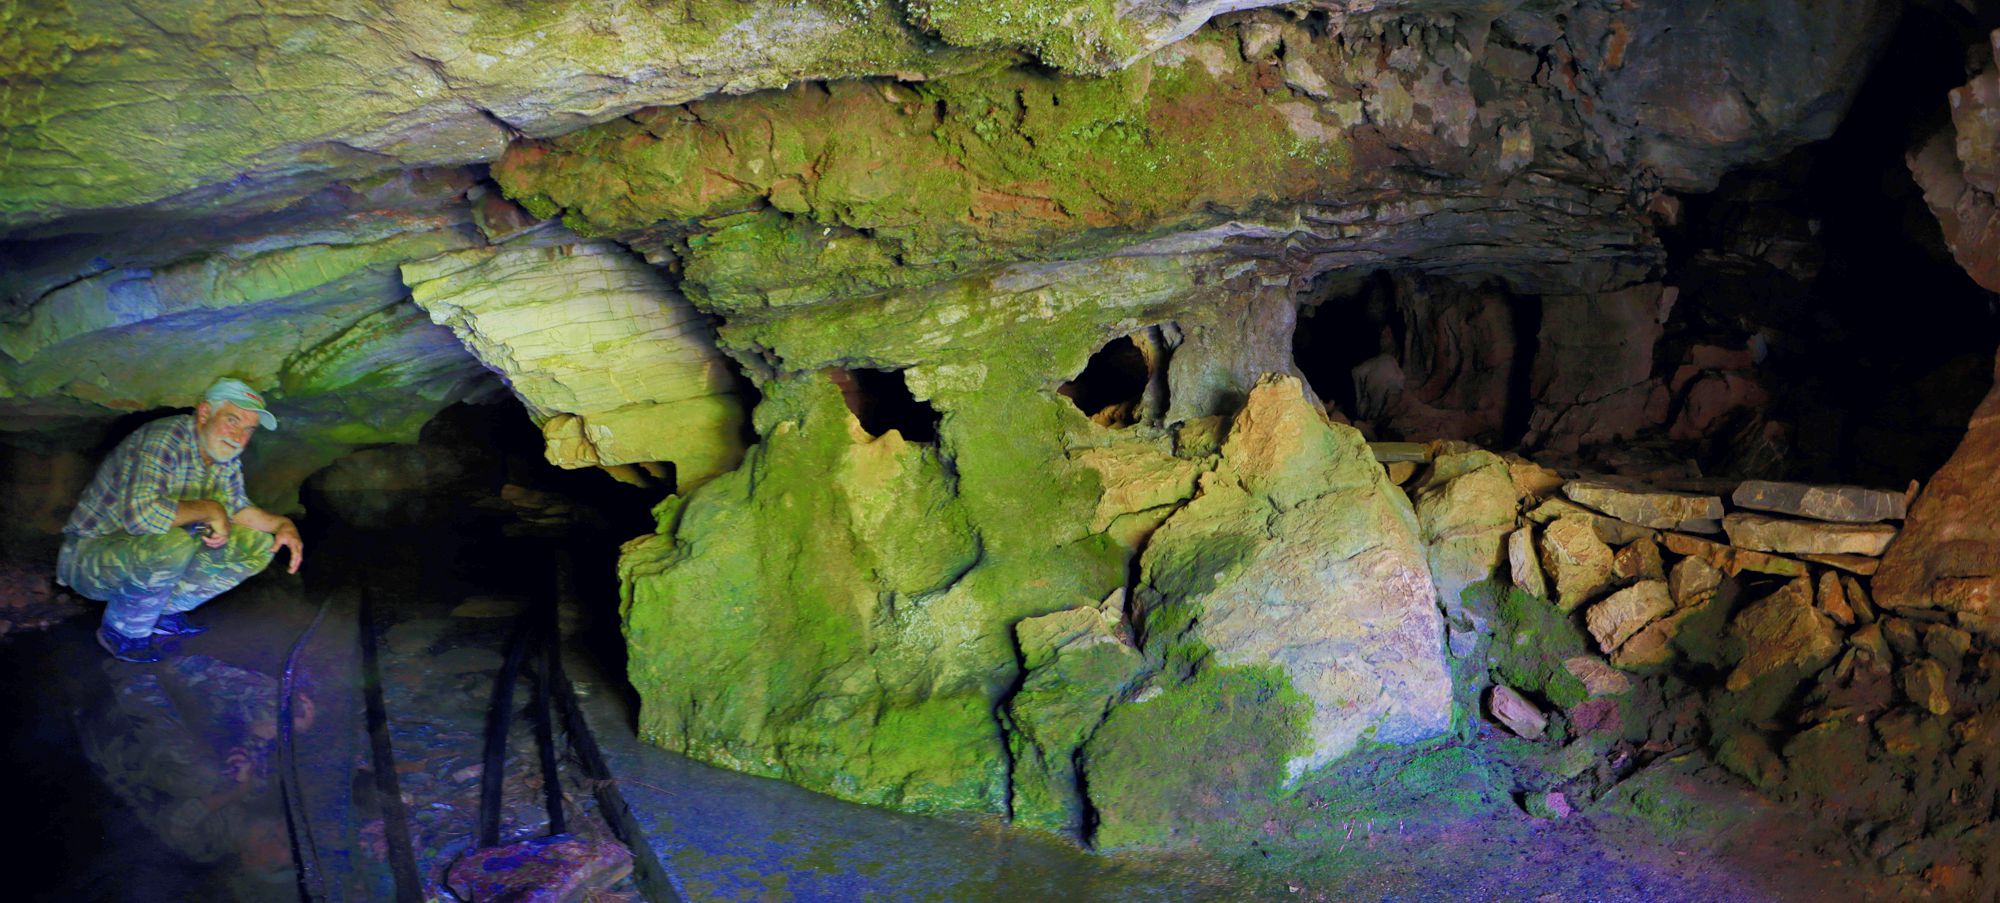 Λύκαιον όρος, Τσουράκι: Το σπήλαιο της Μπουρμπούλας